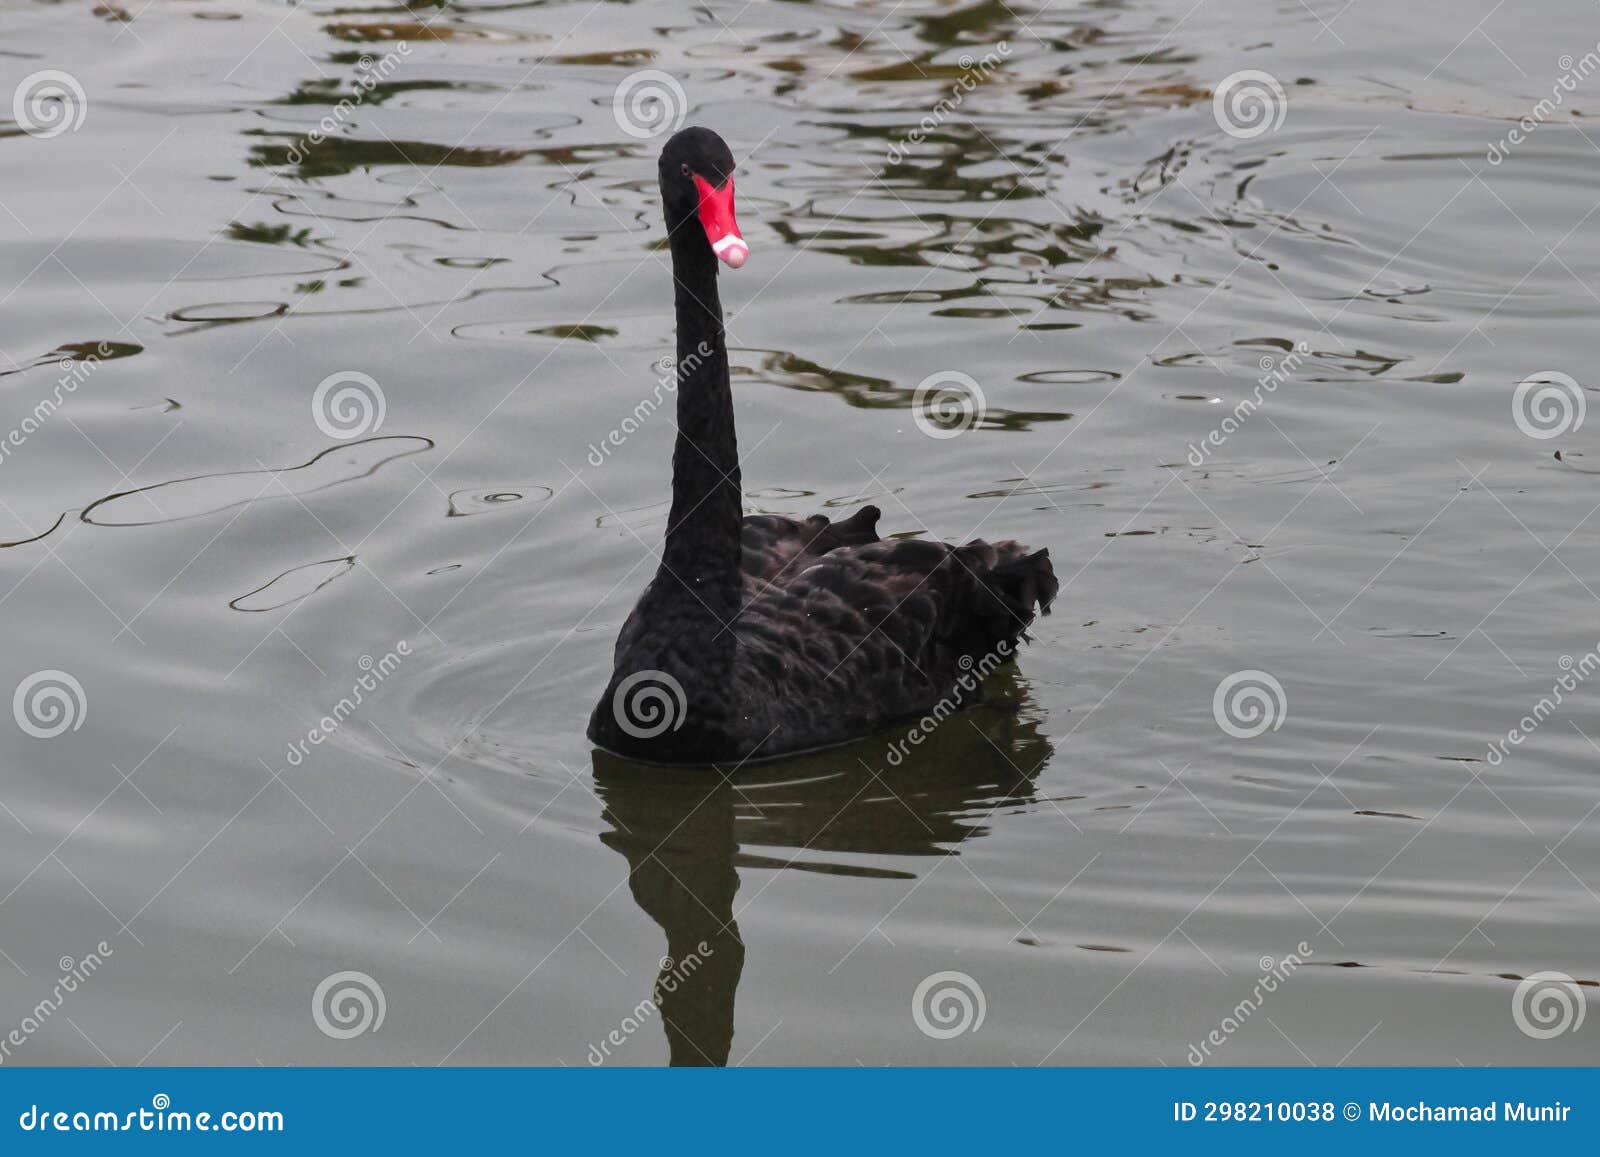 black goose or cignus atratus are swimming